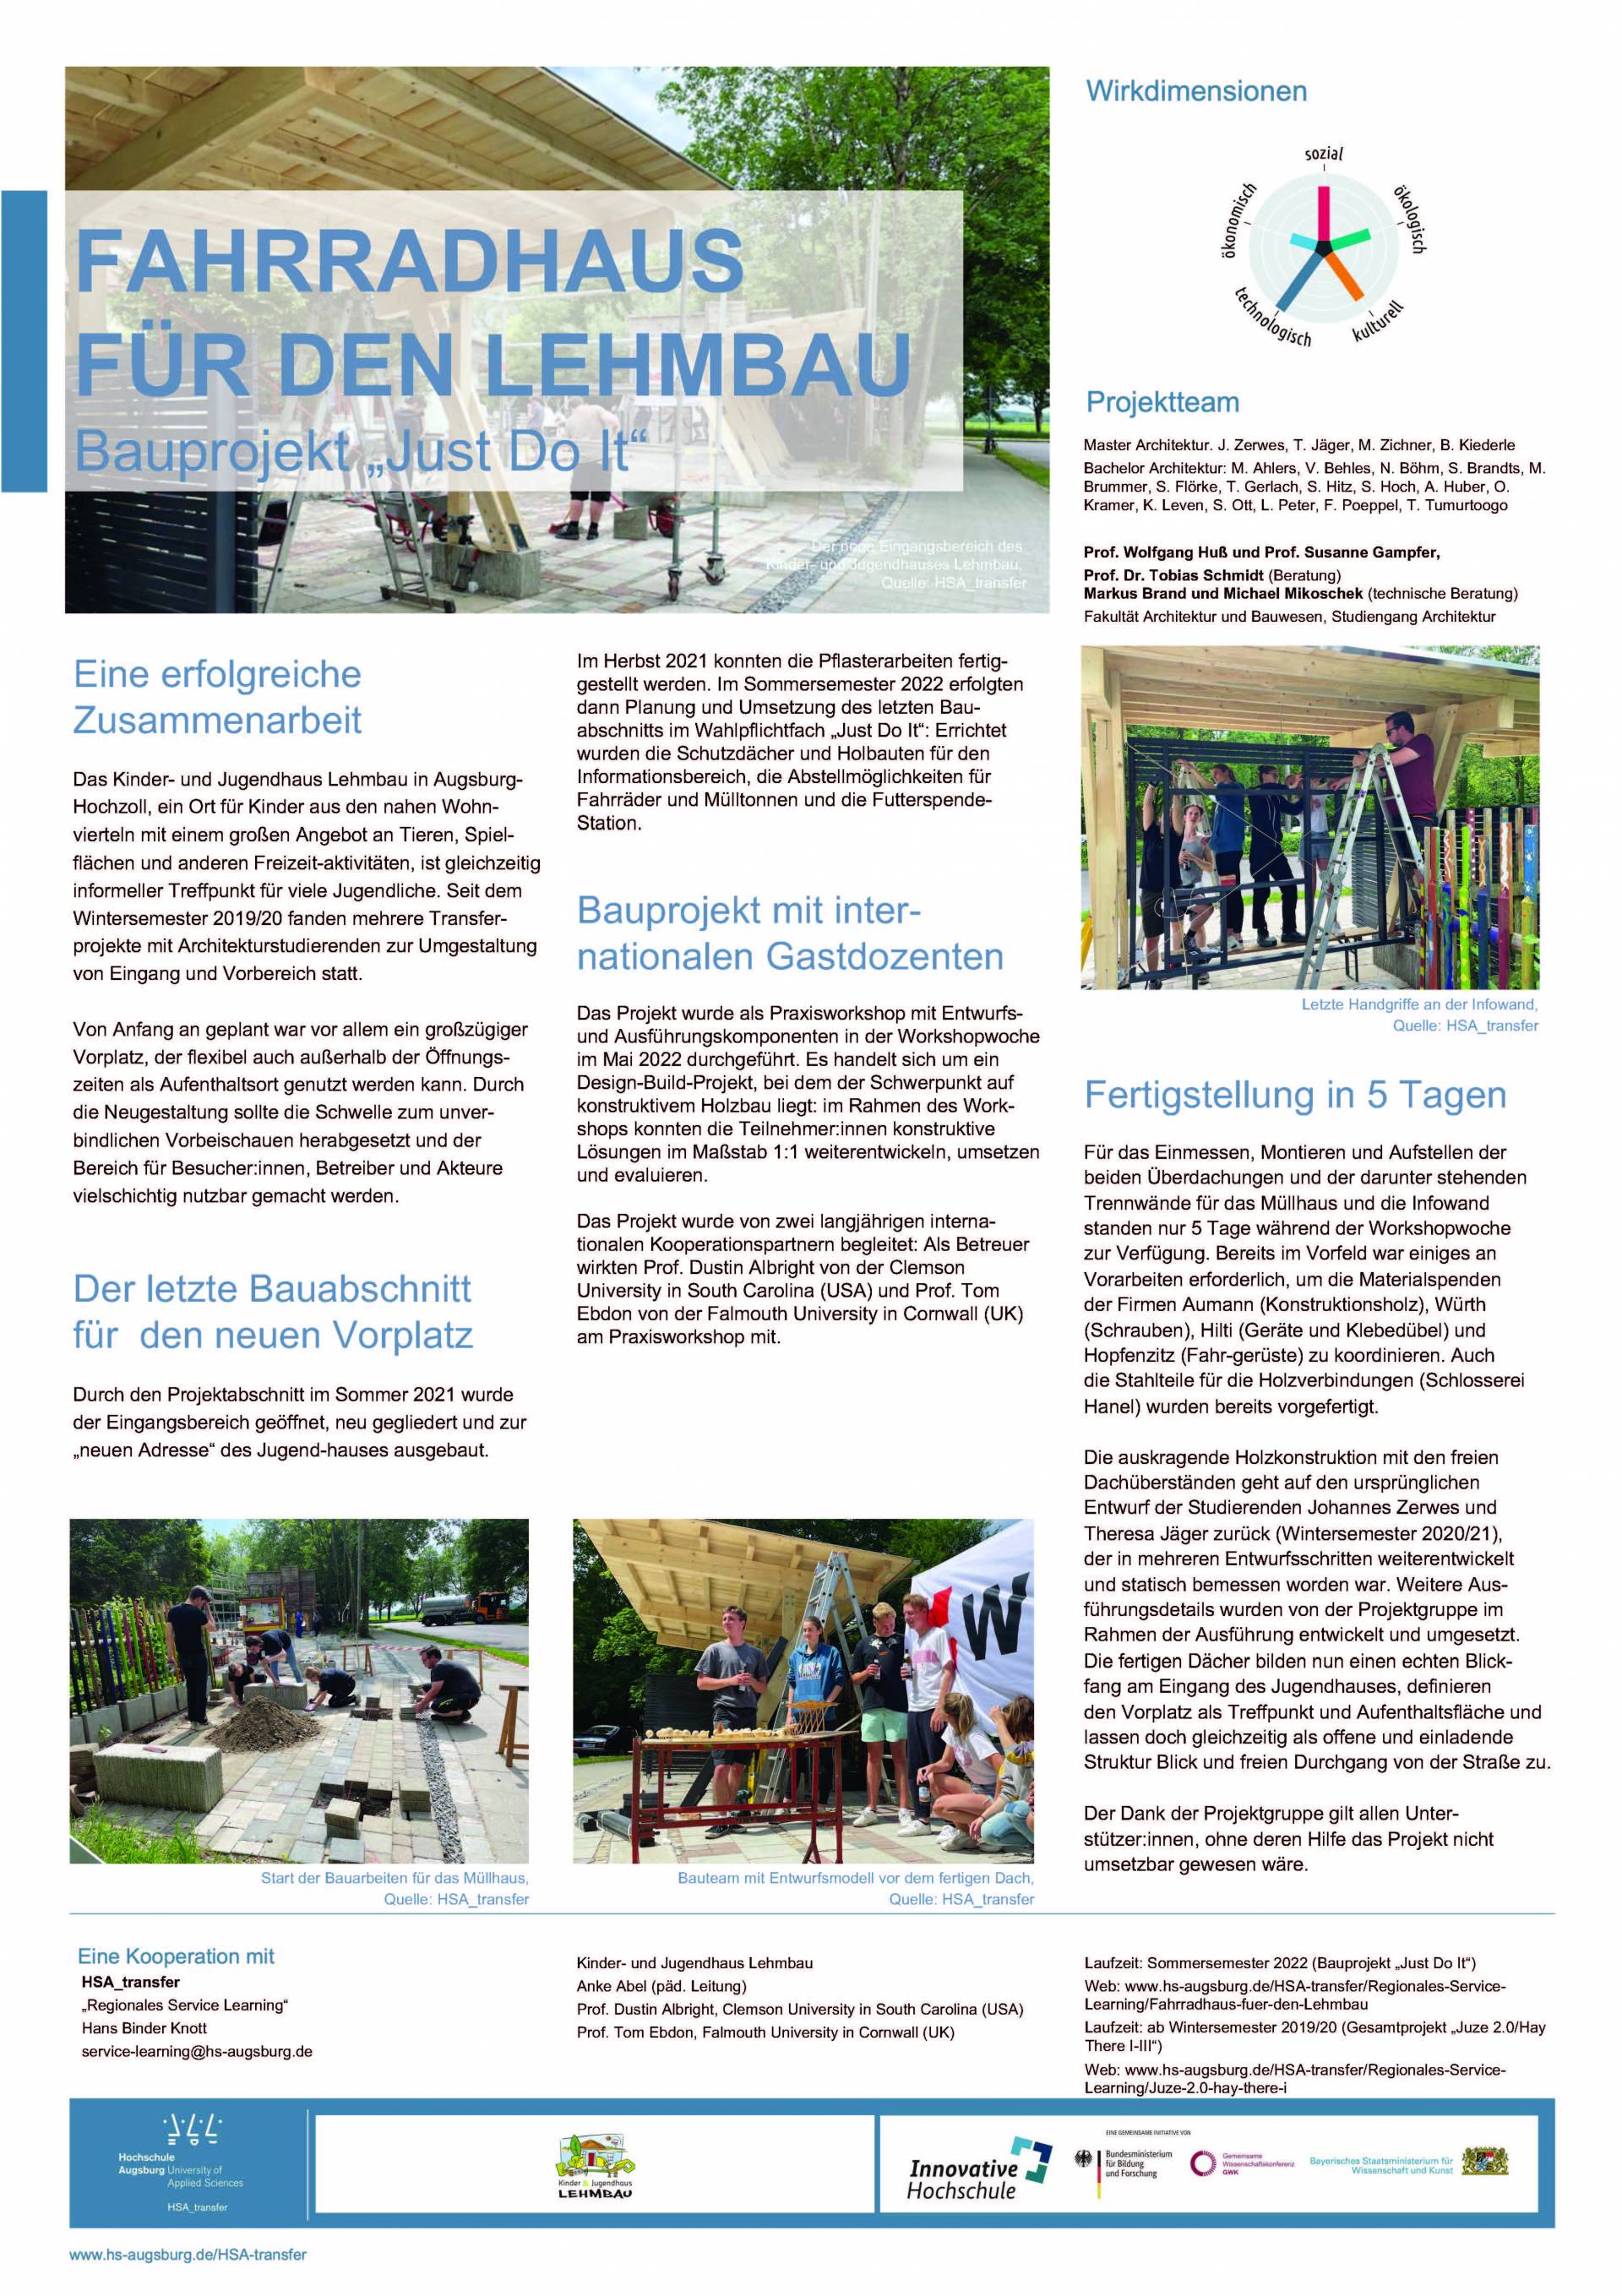 Poster-Fahrradhaus-Juze-Lehmbau-SoSe22